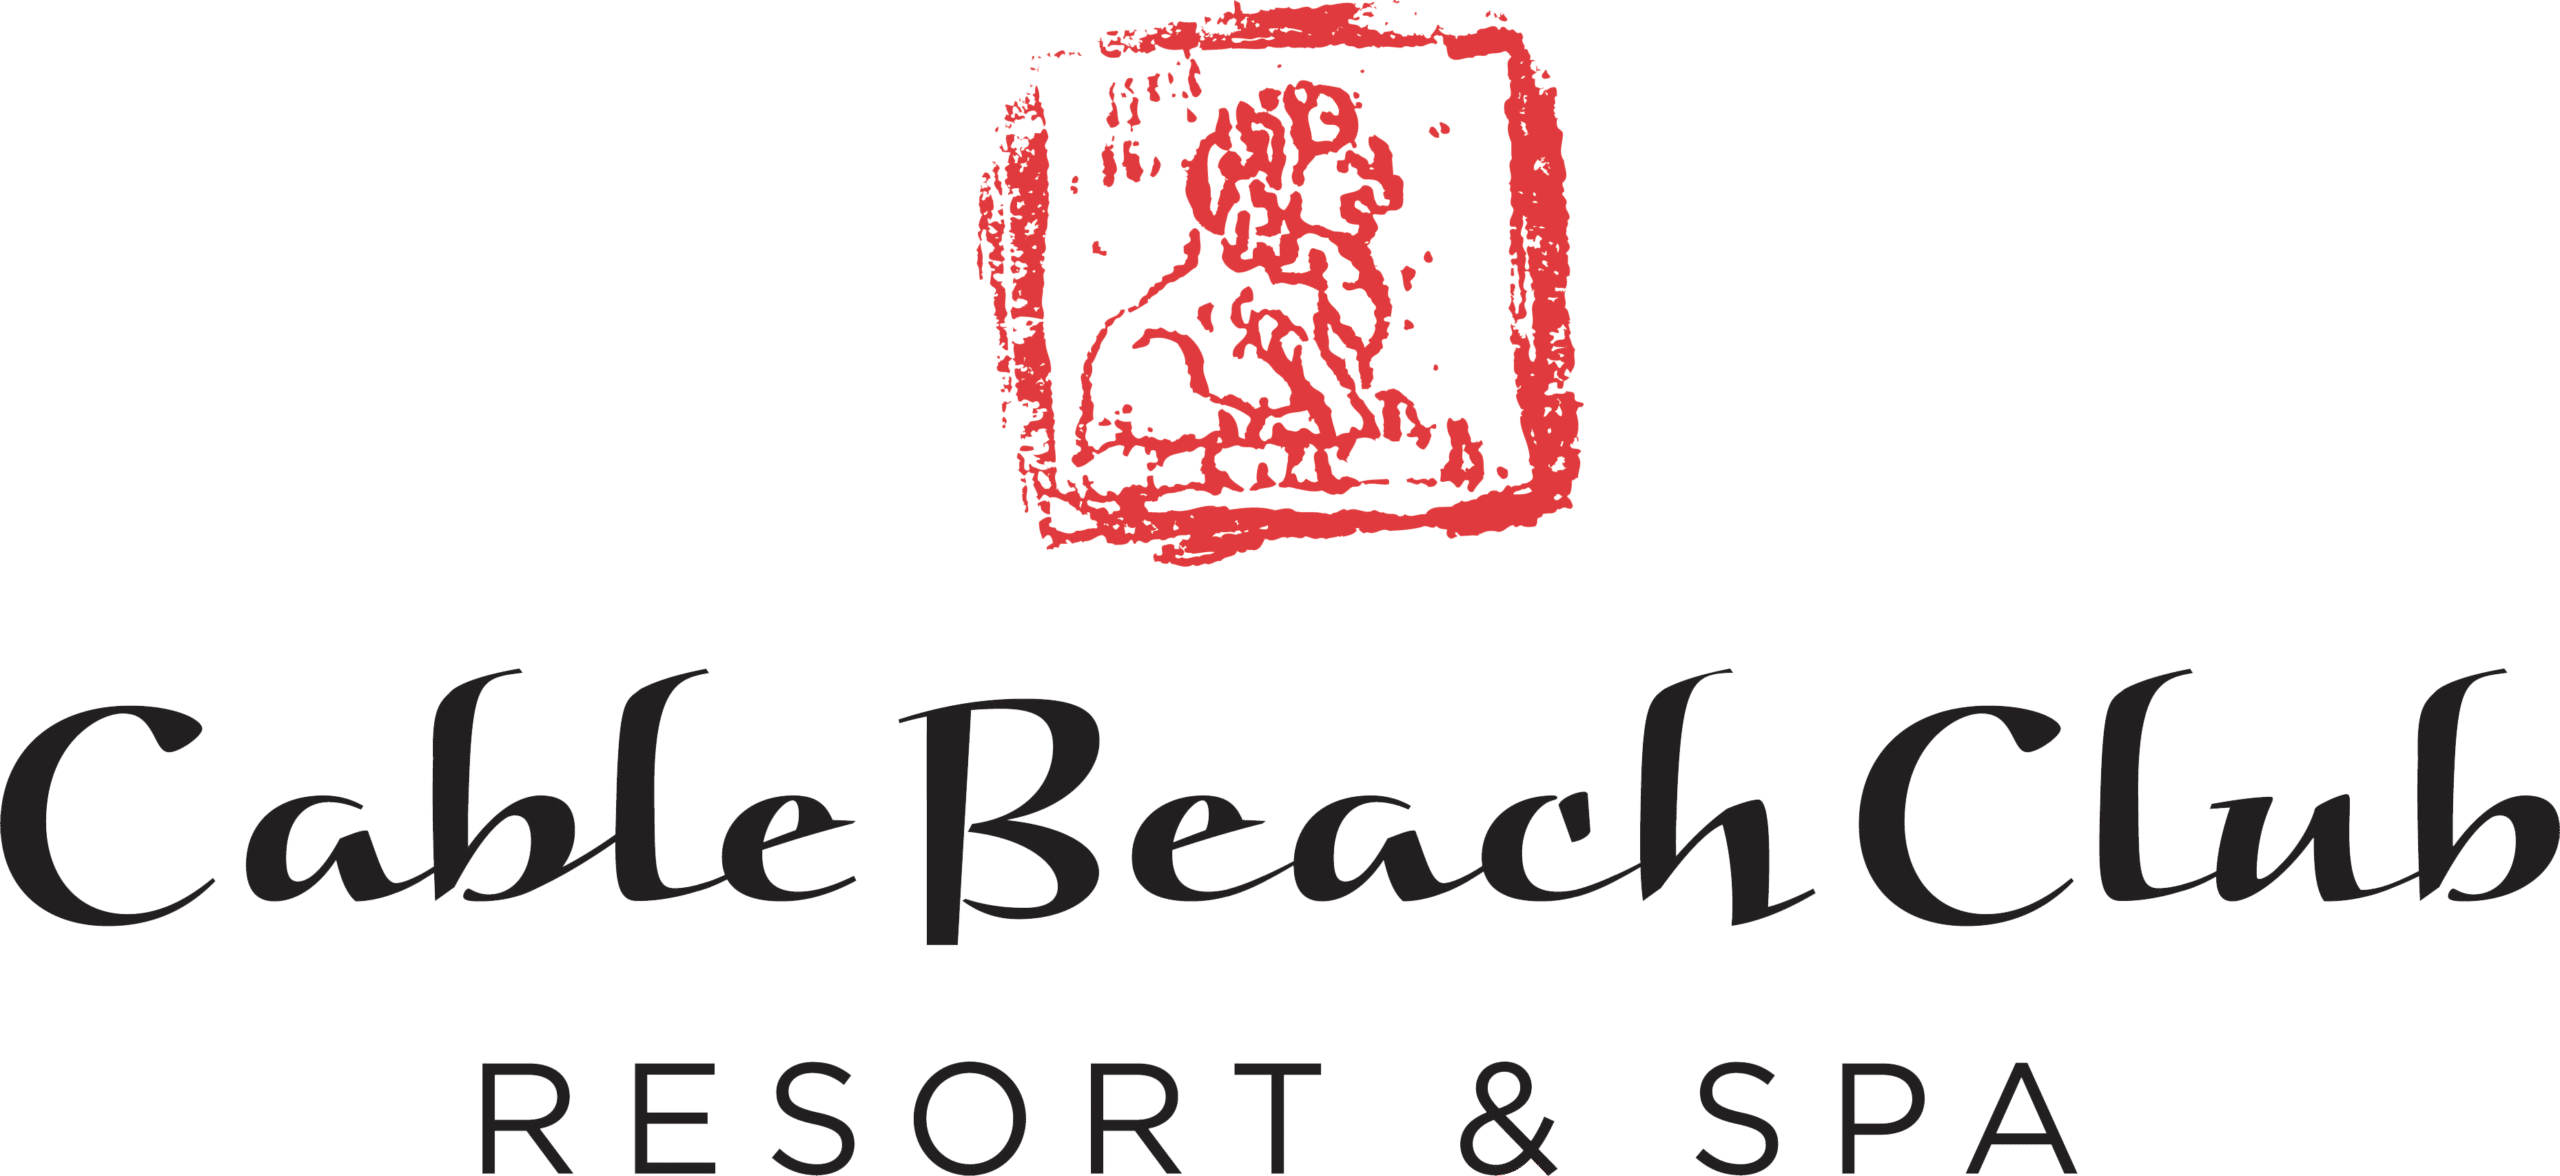 Cable Beach Club